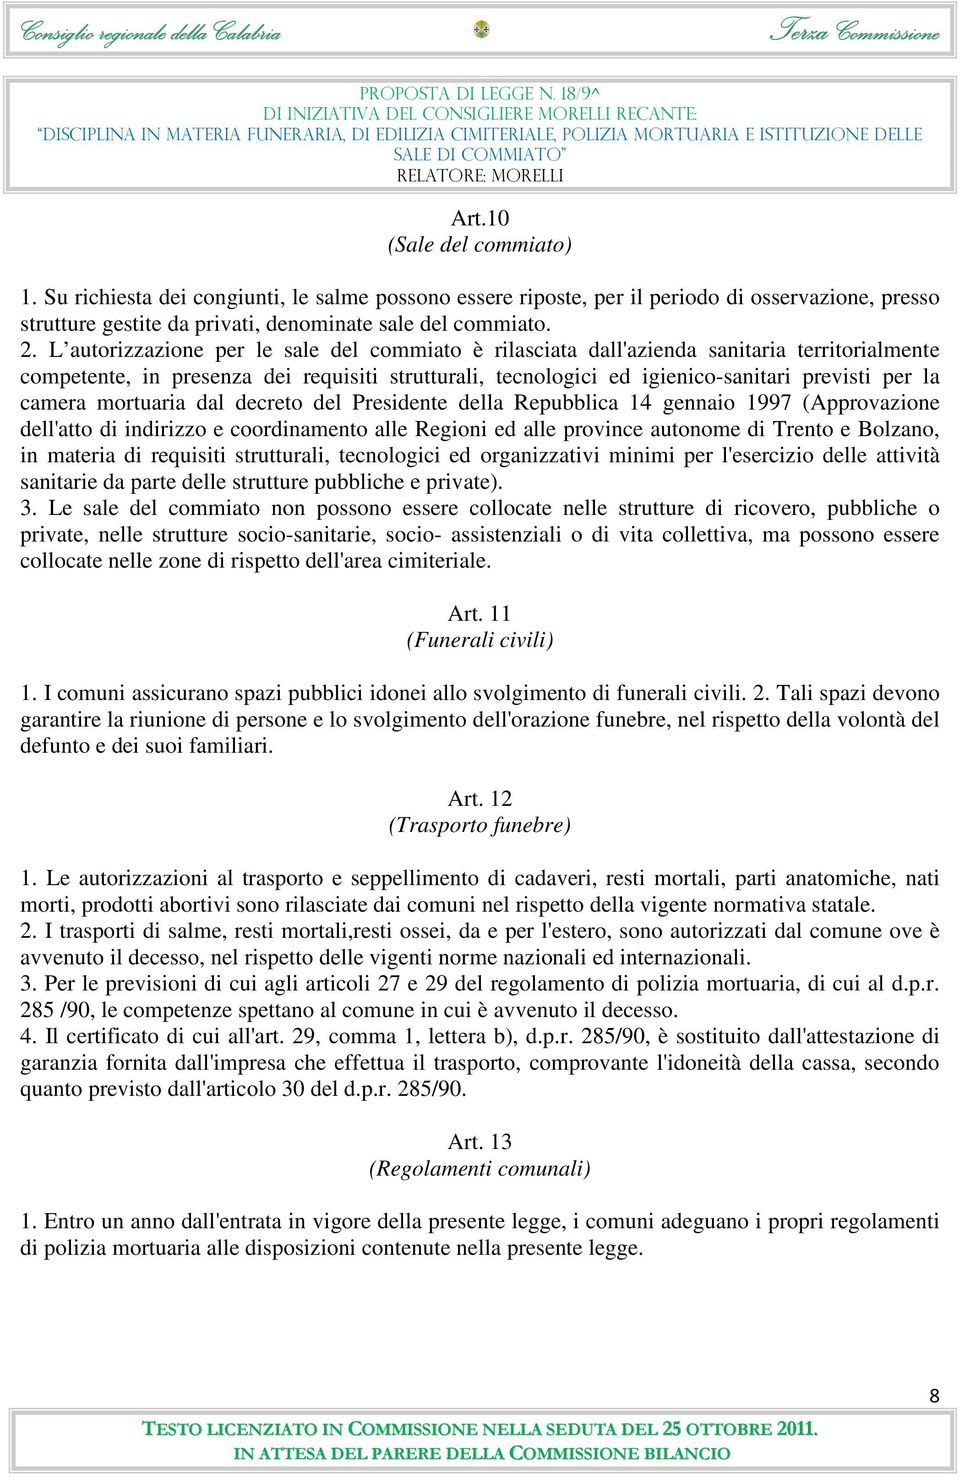 camera mortuaria dal decreto del Presidente della Repubblica 14 gennaio 1997 (Approvazione dell'atto di indirizzo e coordinamento alle Regioni ed alle province autonome di Trento e Bolzano, in